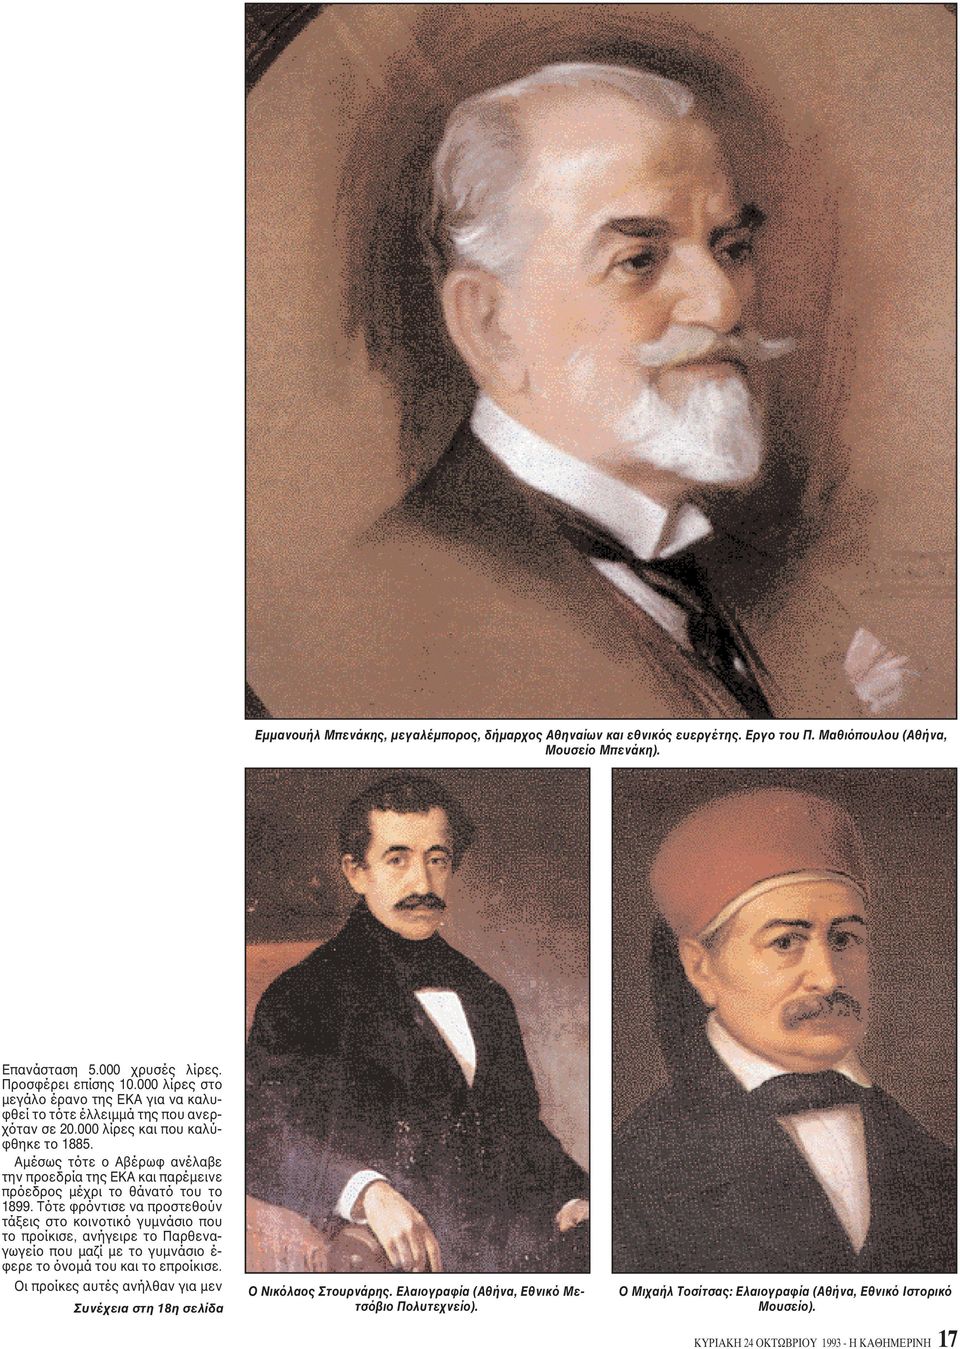 Aμέσως τότε ο Aβέρωφ ανέλαβε την προεδρία της EKA και παρέμεινε πρόεδρος μέχρι το θάνατό του το 1899.